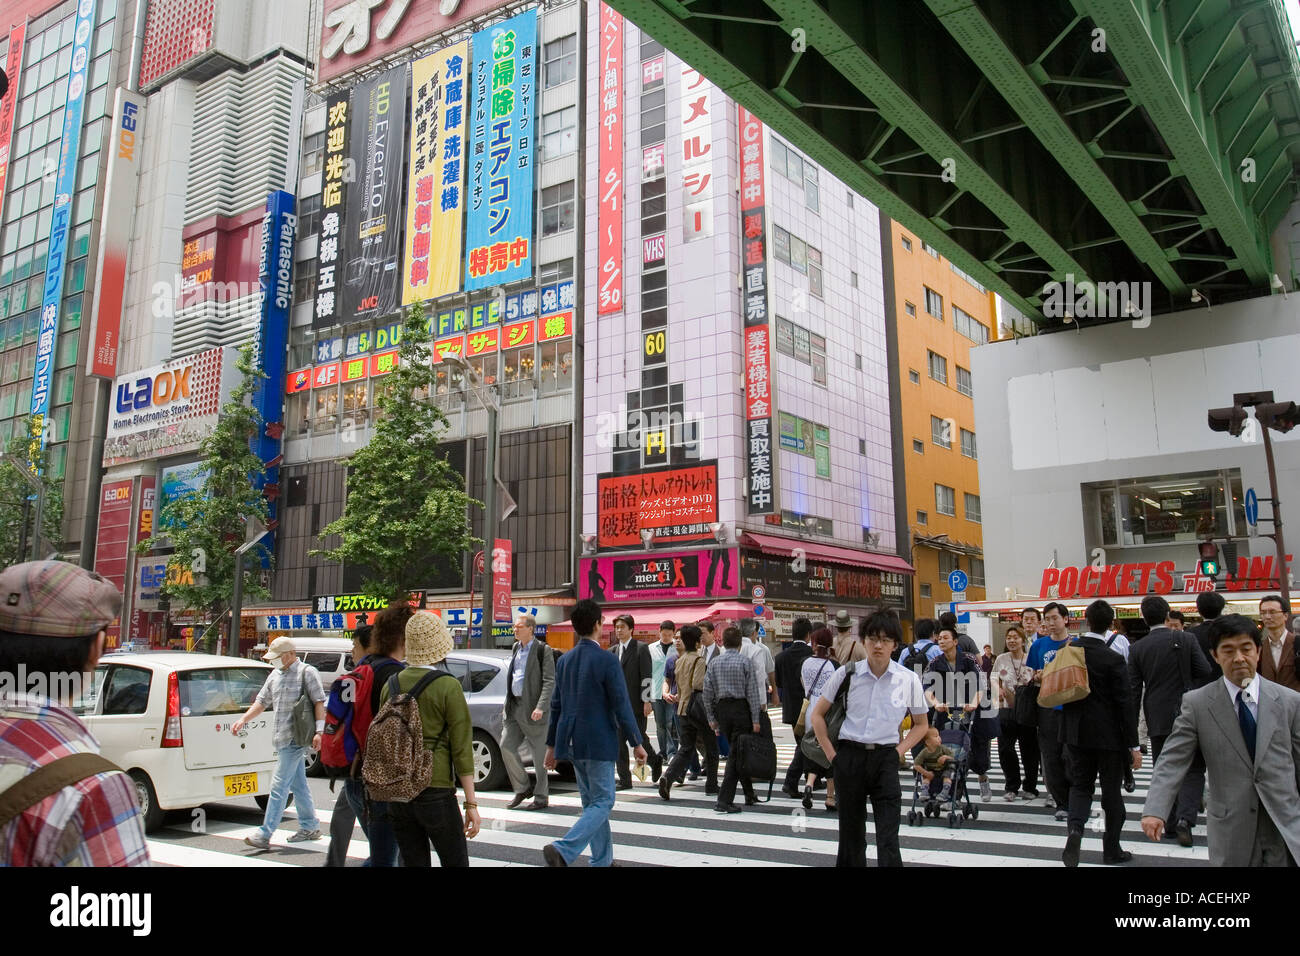 Les personnes qui traversent la rue dans l'électronique d'Akihabara district de Tokyo Japon avec de nombreux signes magasins publicité Banque D'Images